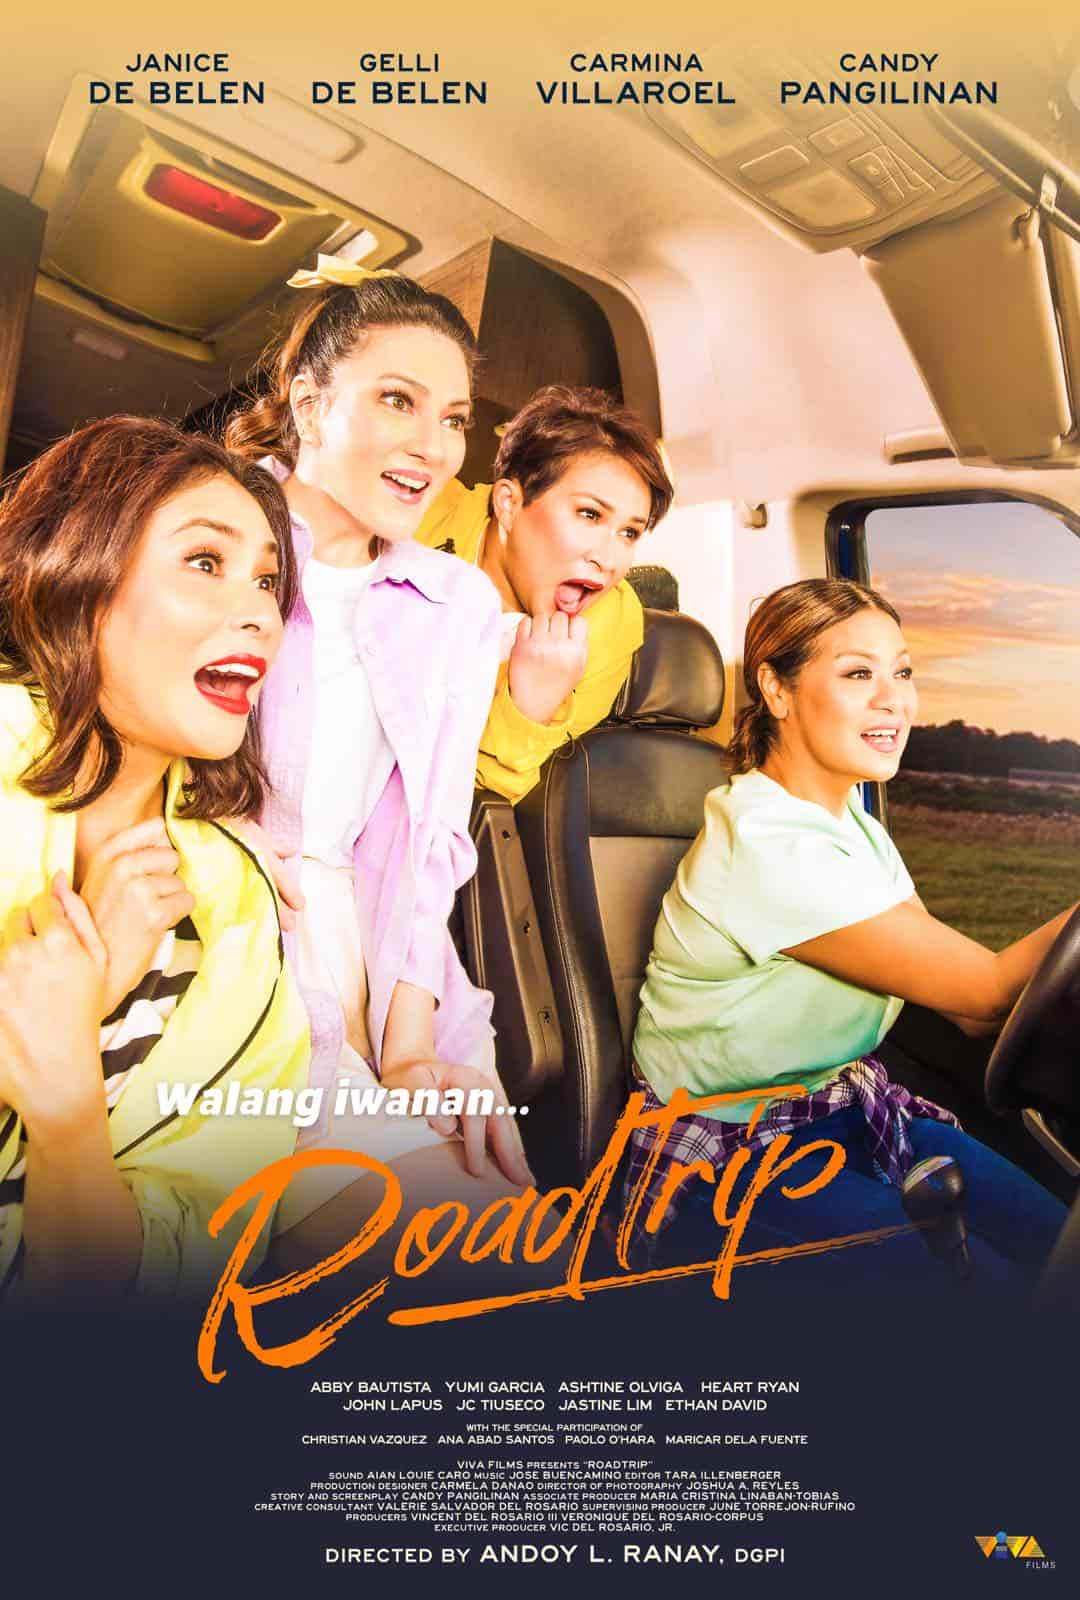 Poster for Roadtrip